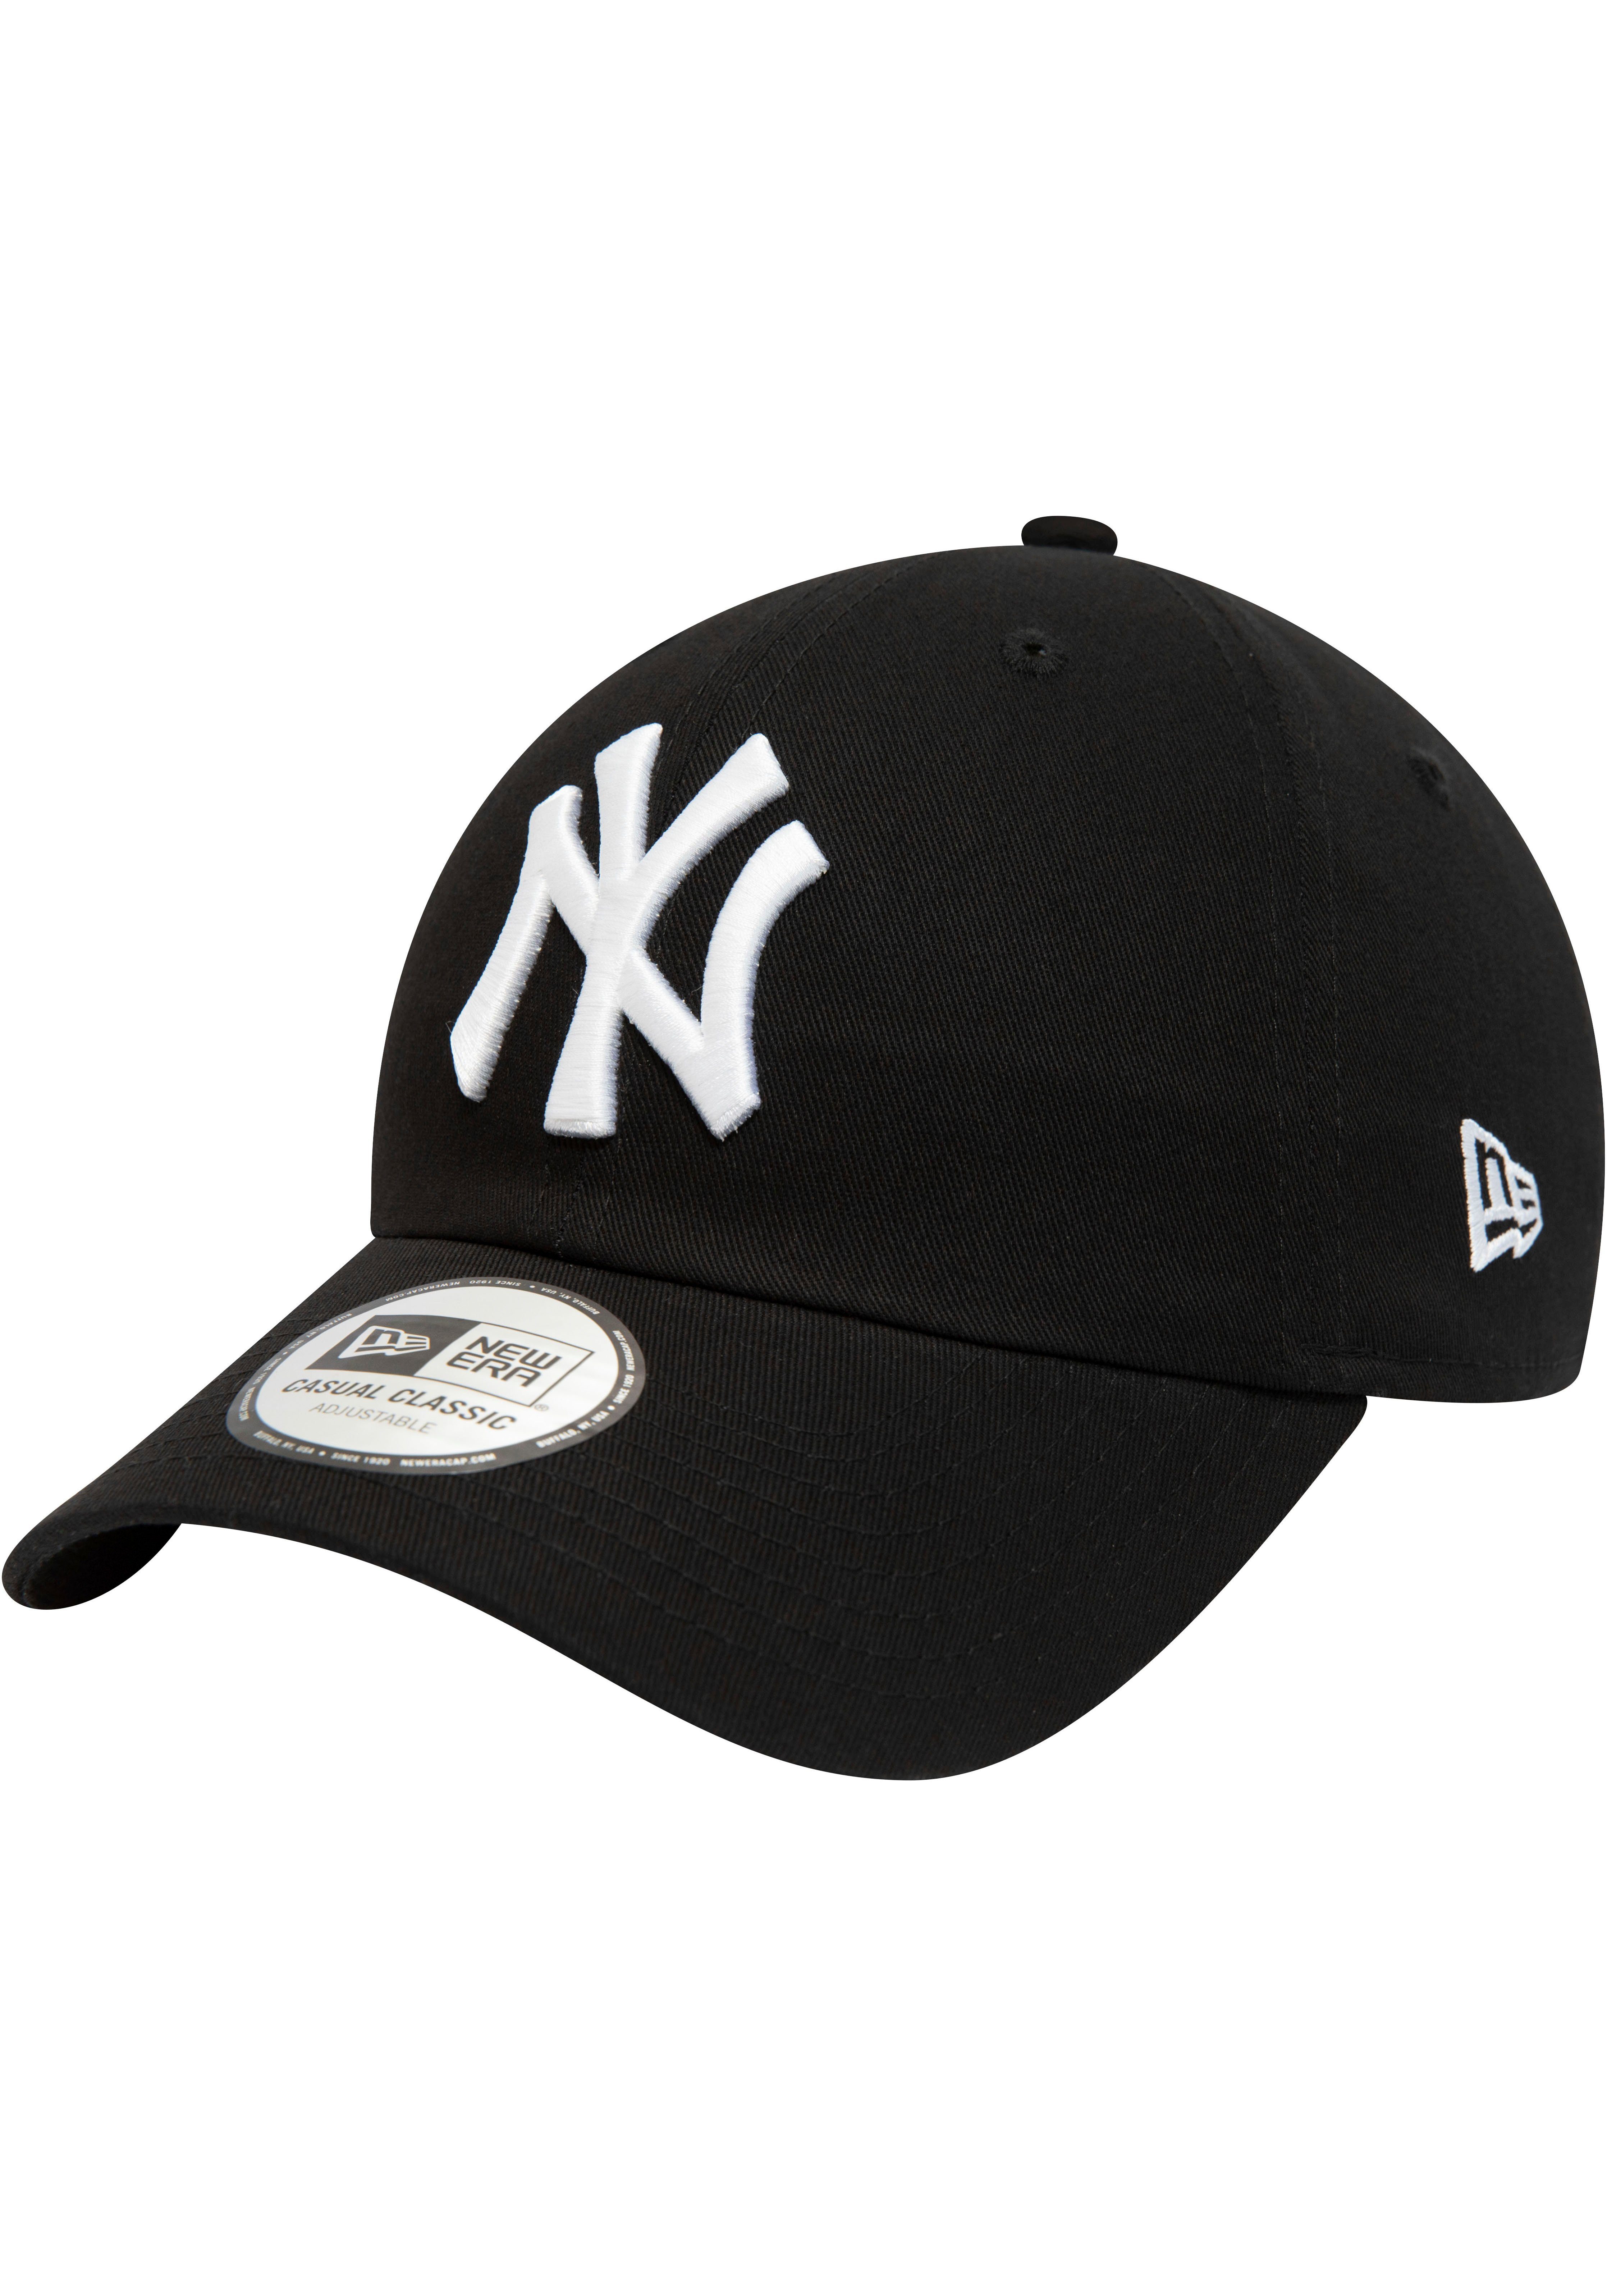 New Era 940Leag NY Cap Cap Era Baseball New Cap